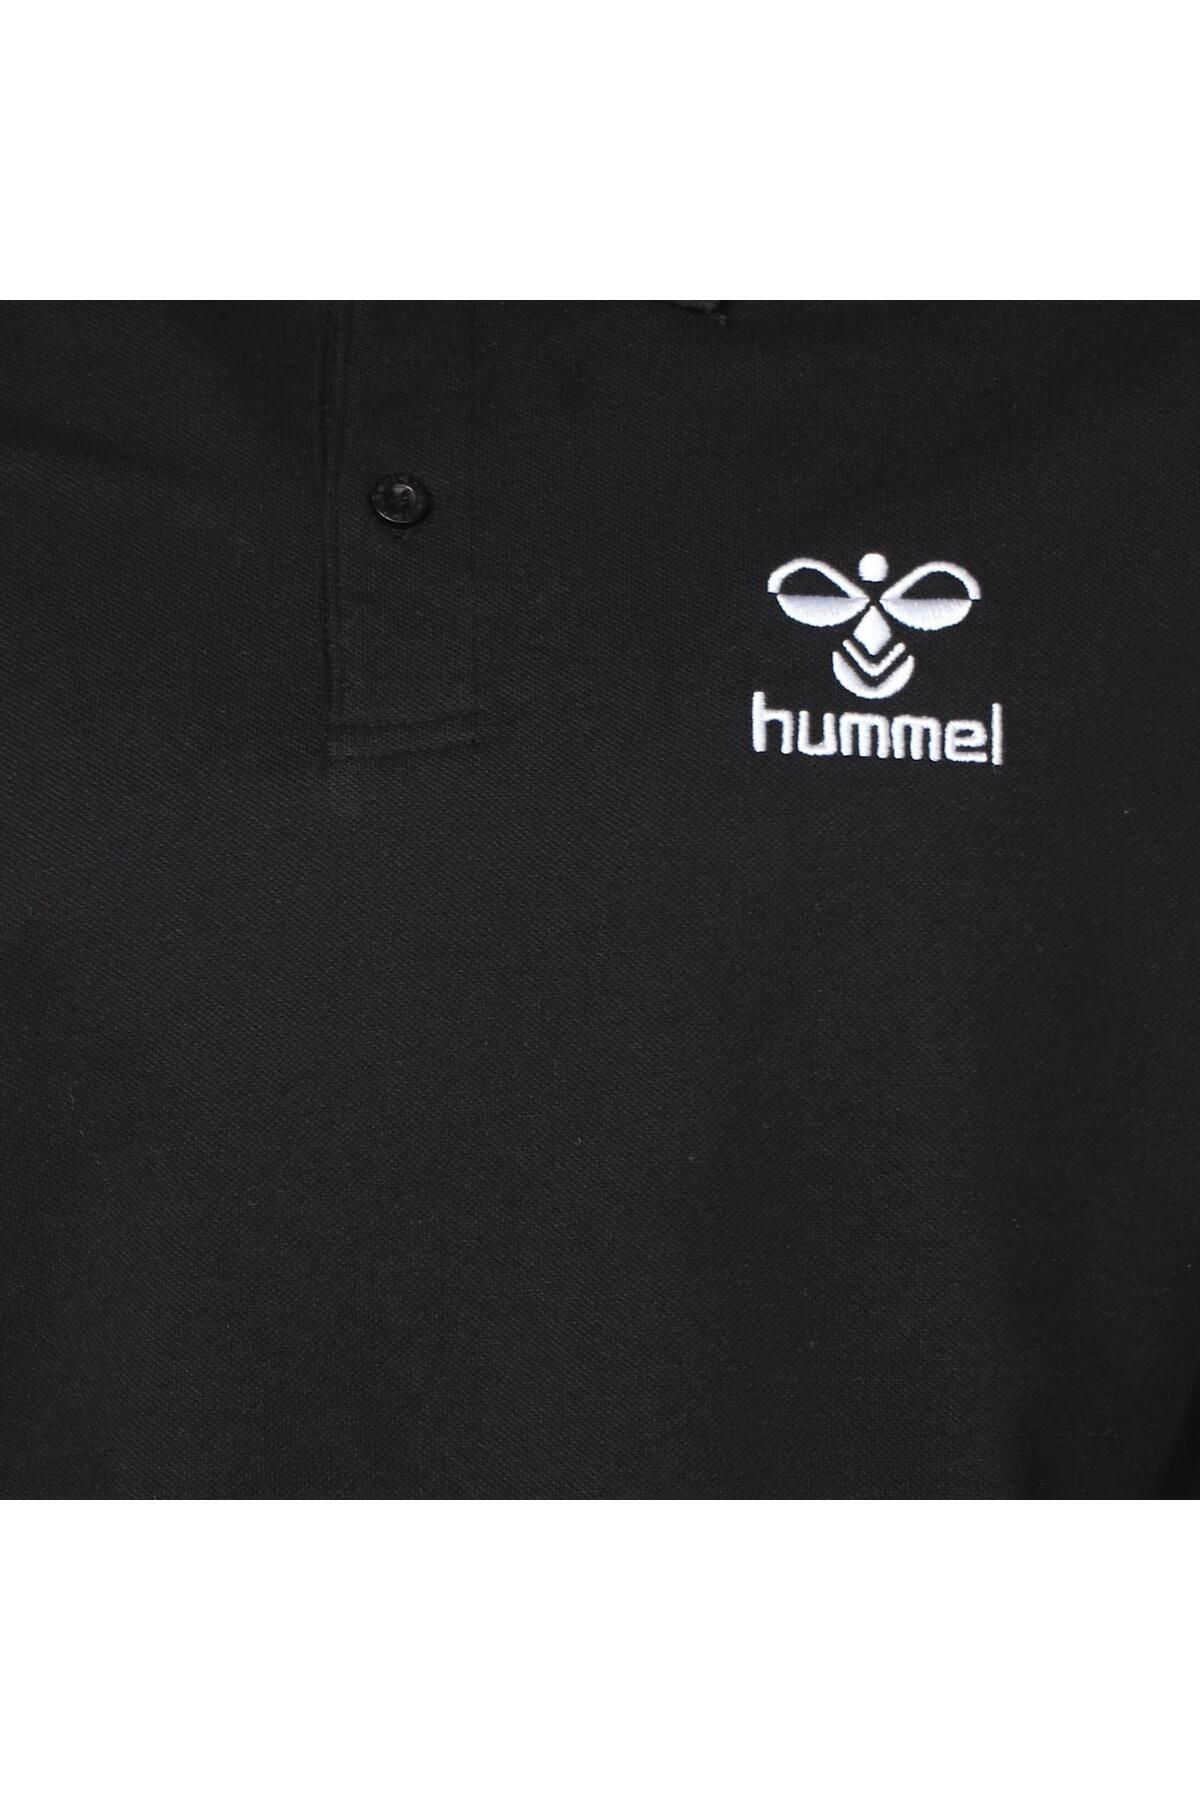 hummel 911655-2001 تی شرت چوگان مرد سیاه پوست